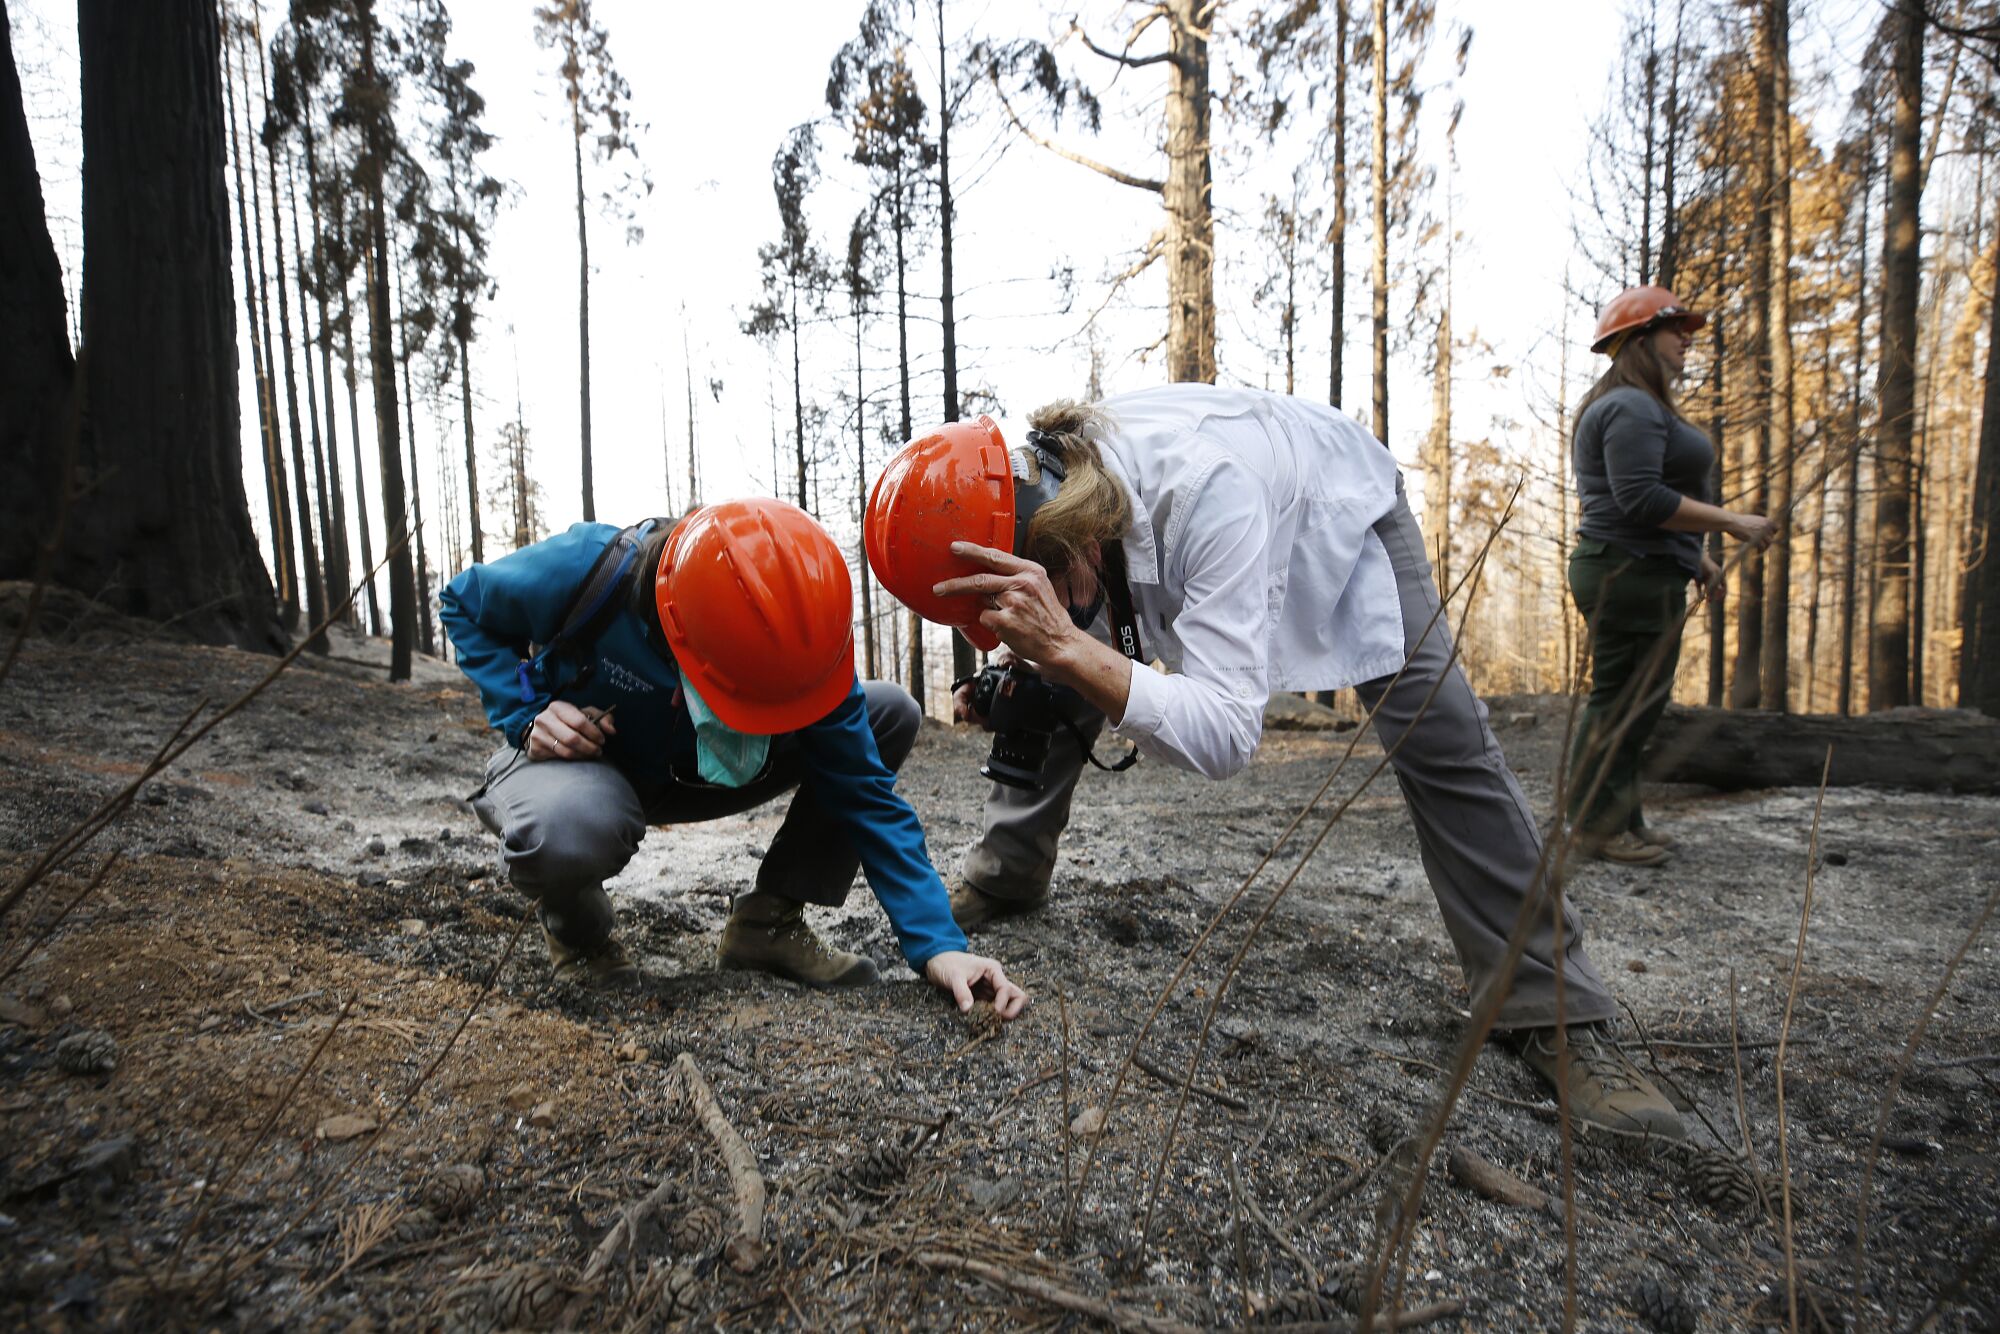 Two women in orange hard hats kneel to examine sequoia cones on an ashy forest floor